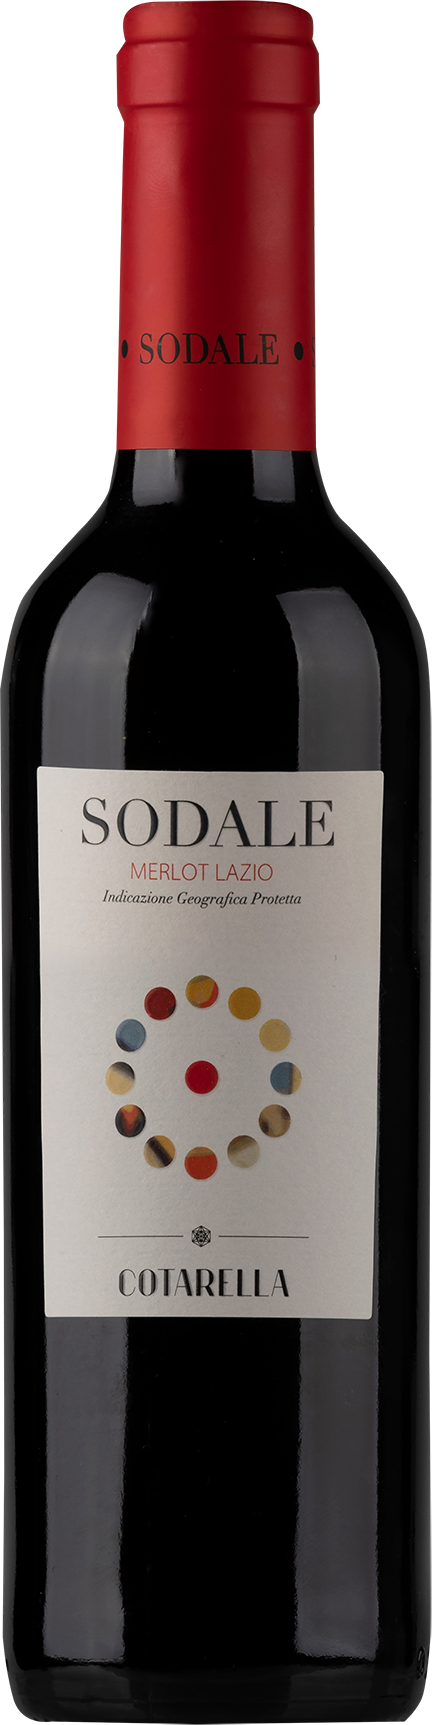 Sodale Lazio IGP halbe Flasche - 2019